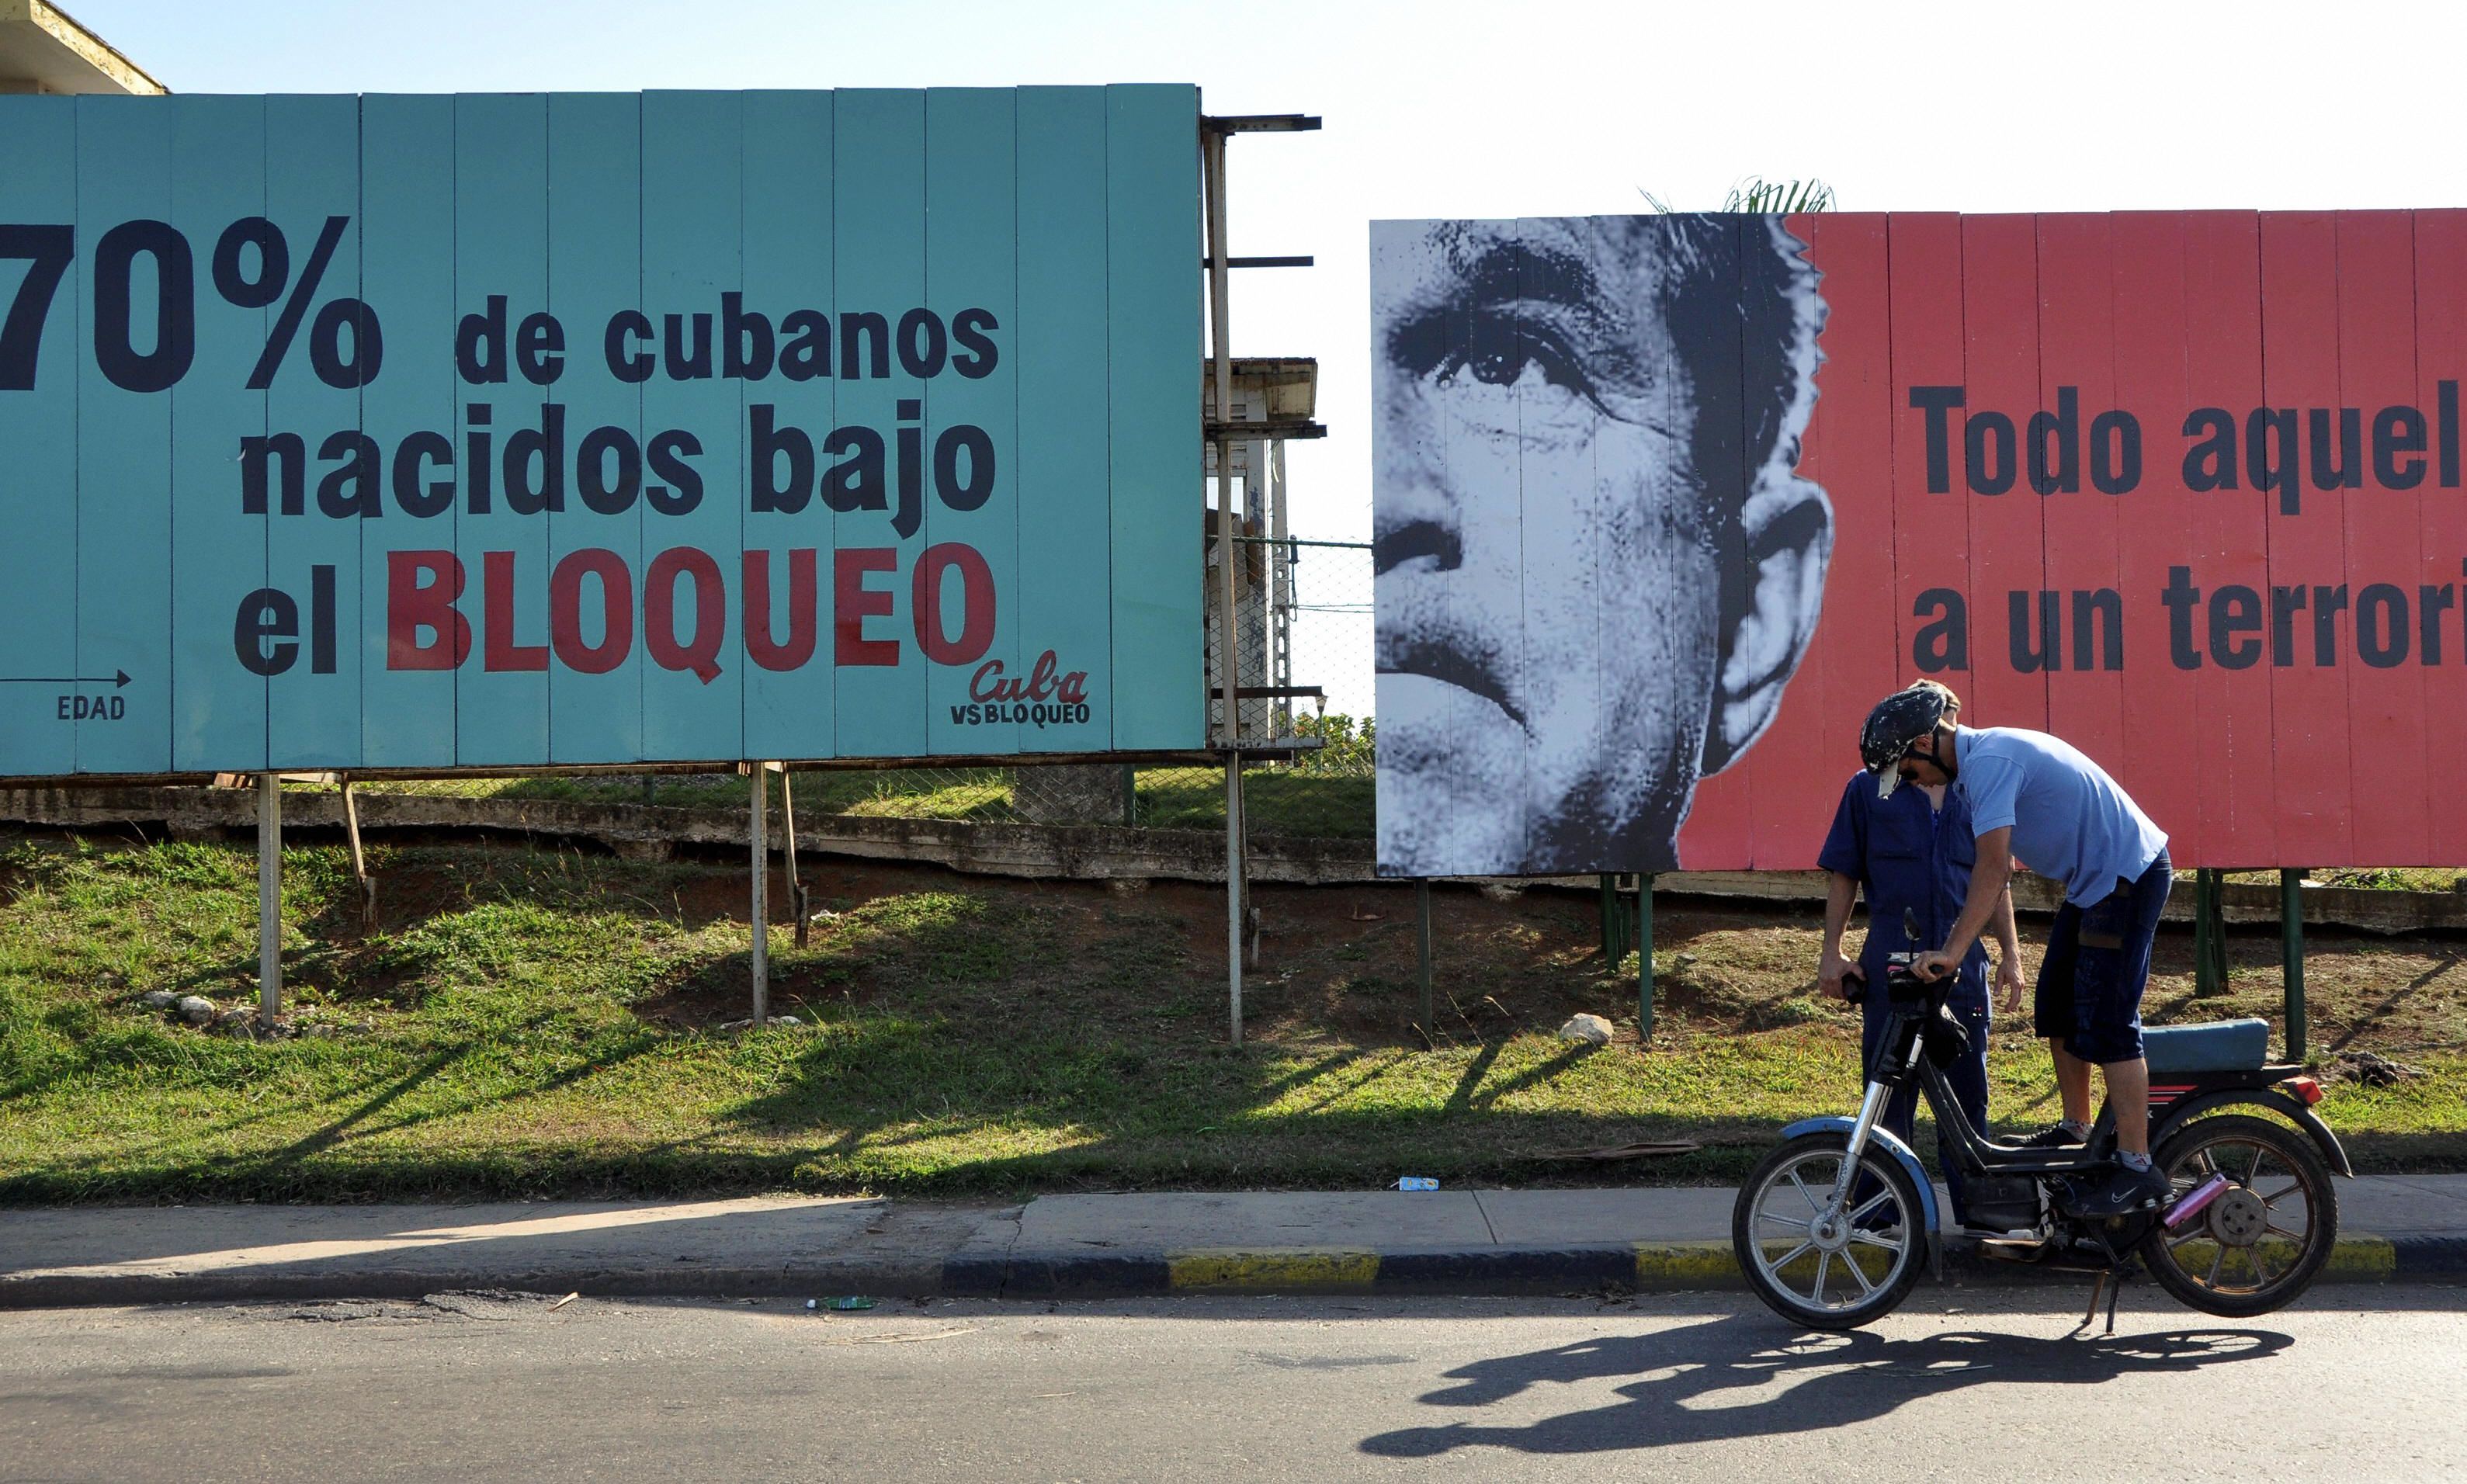 Cuba's impact on Washington Senators history